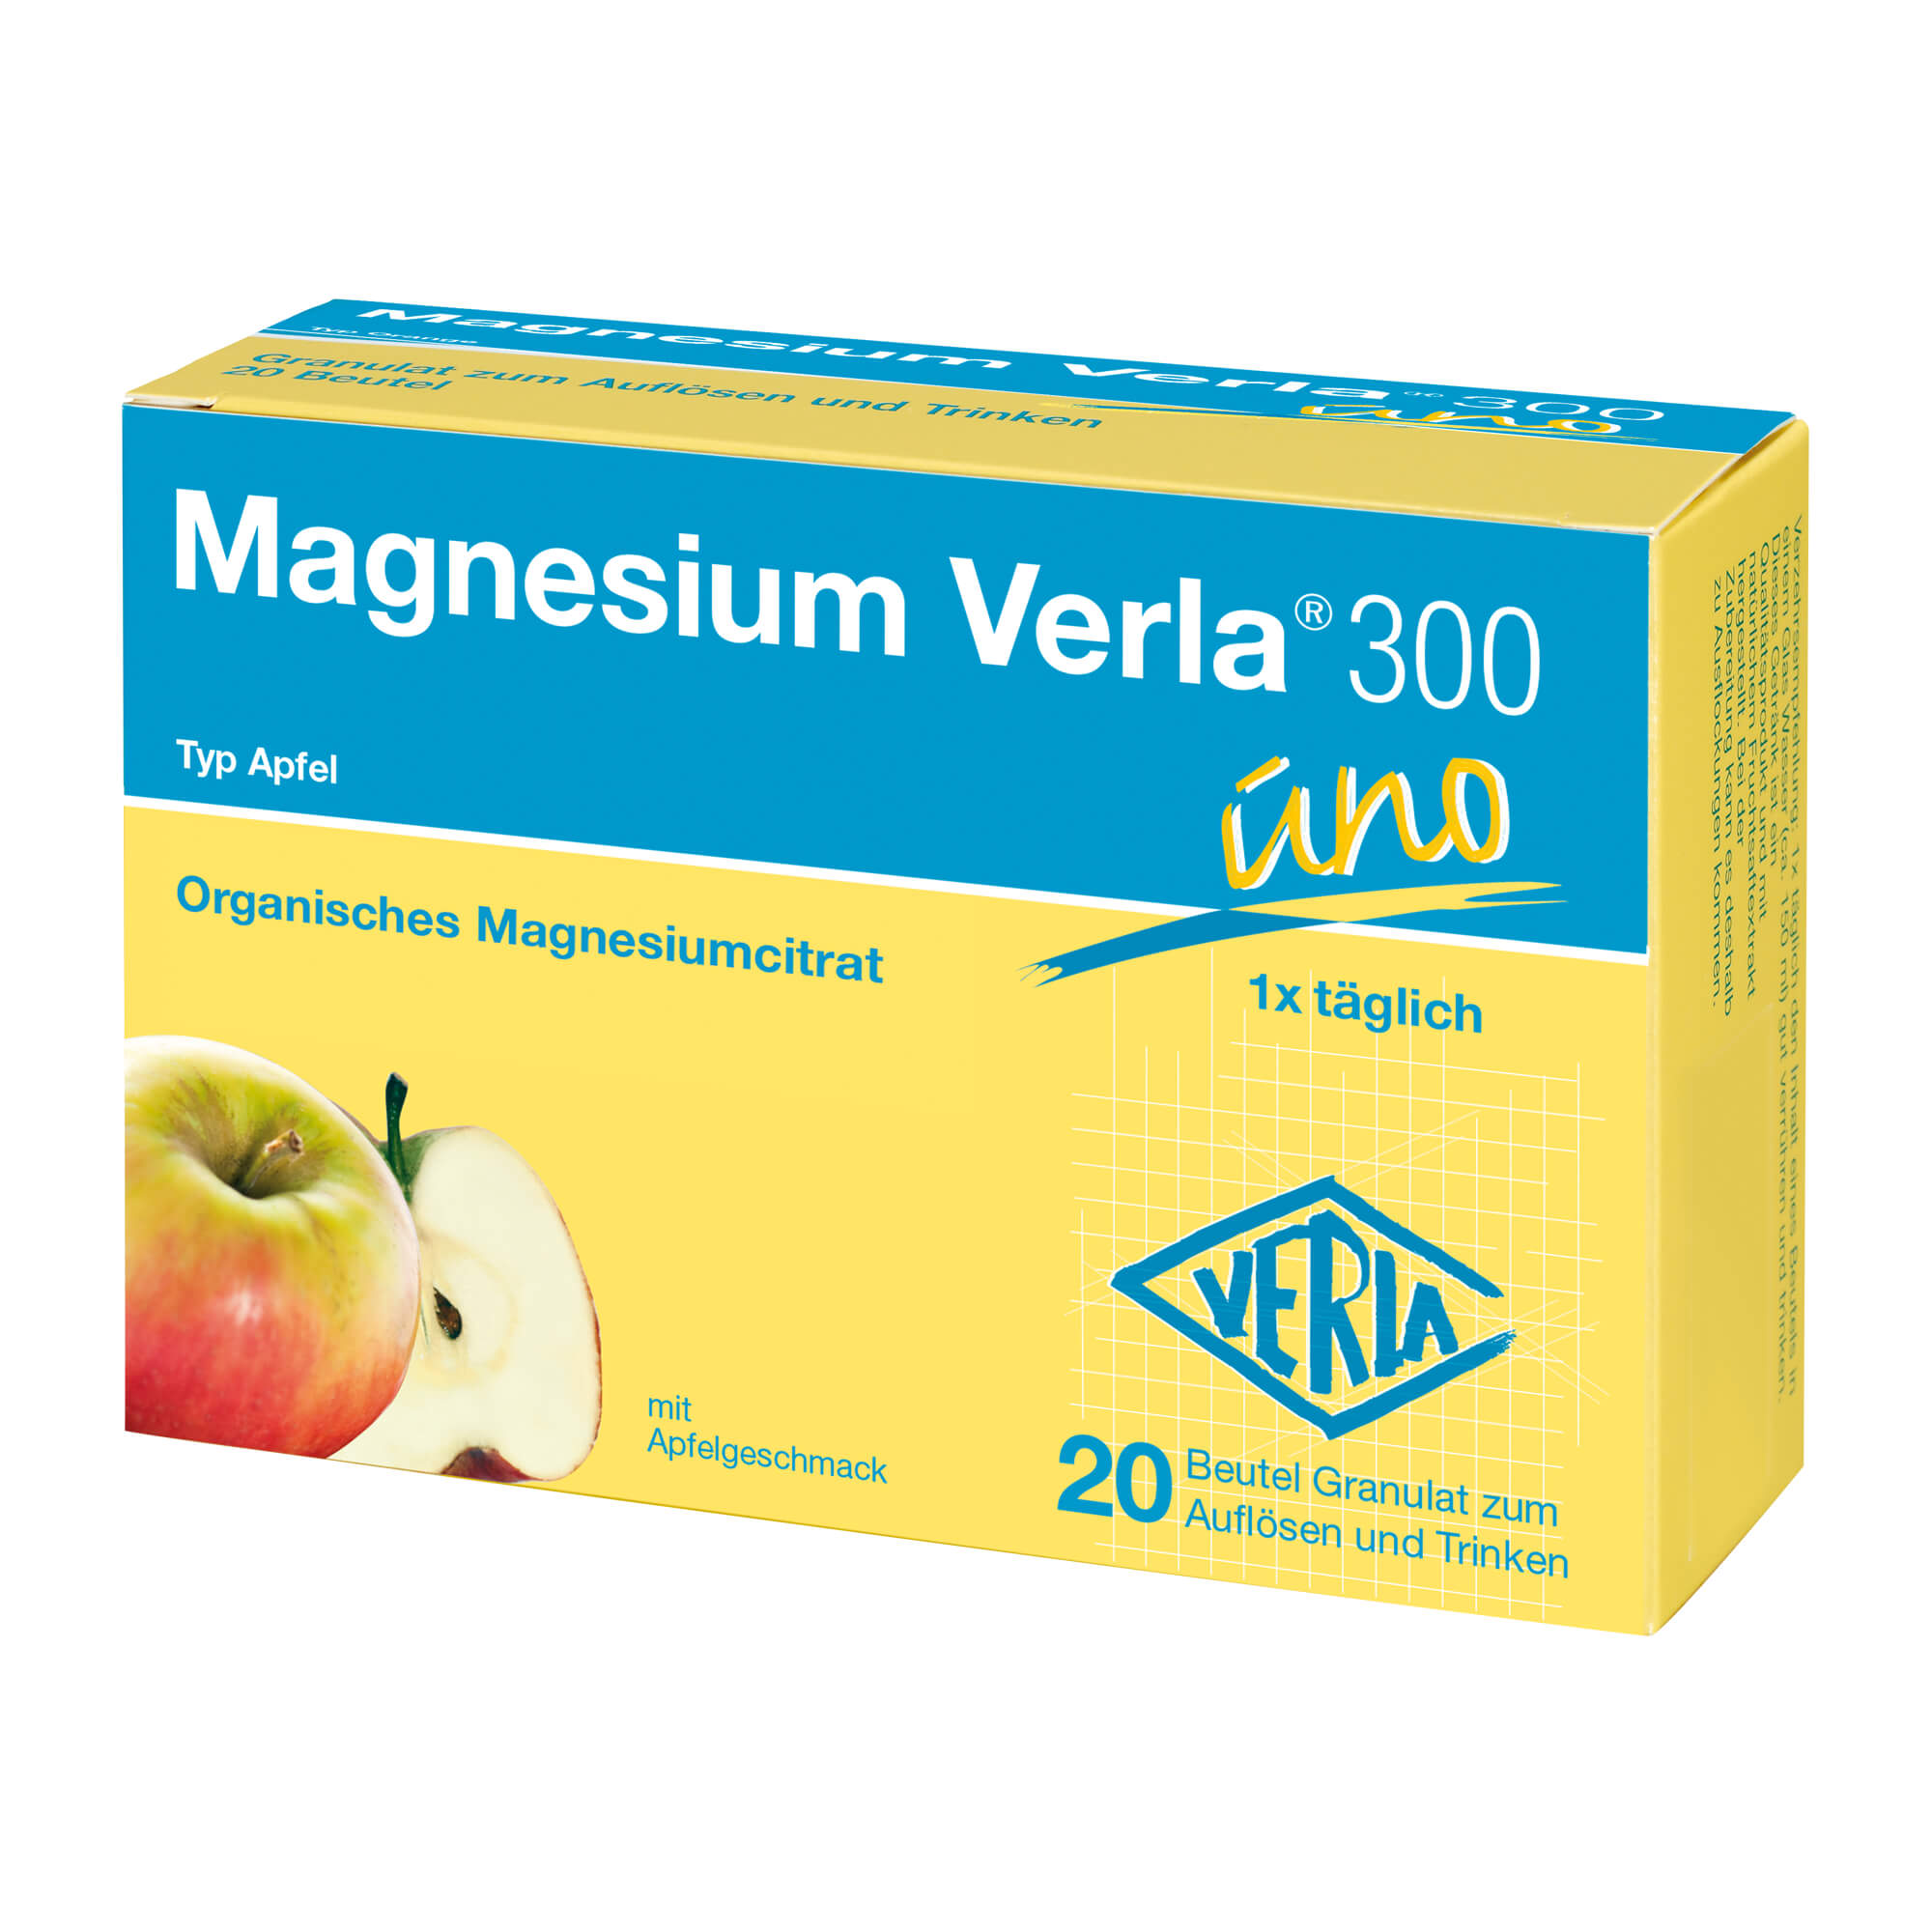 Nahrungsergänzungsmittel mit hochdosiertem Magnesium. Trinkgranulat mit Apfelgeschmack.